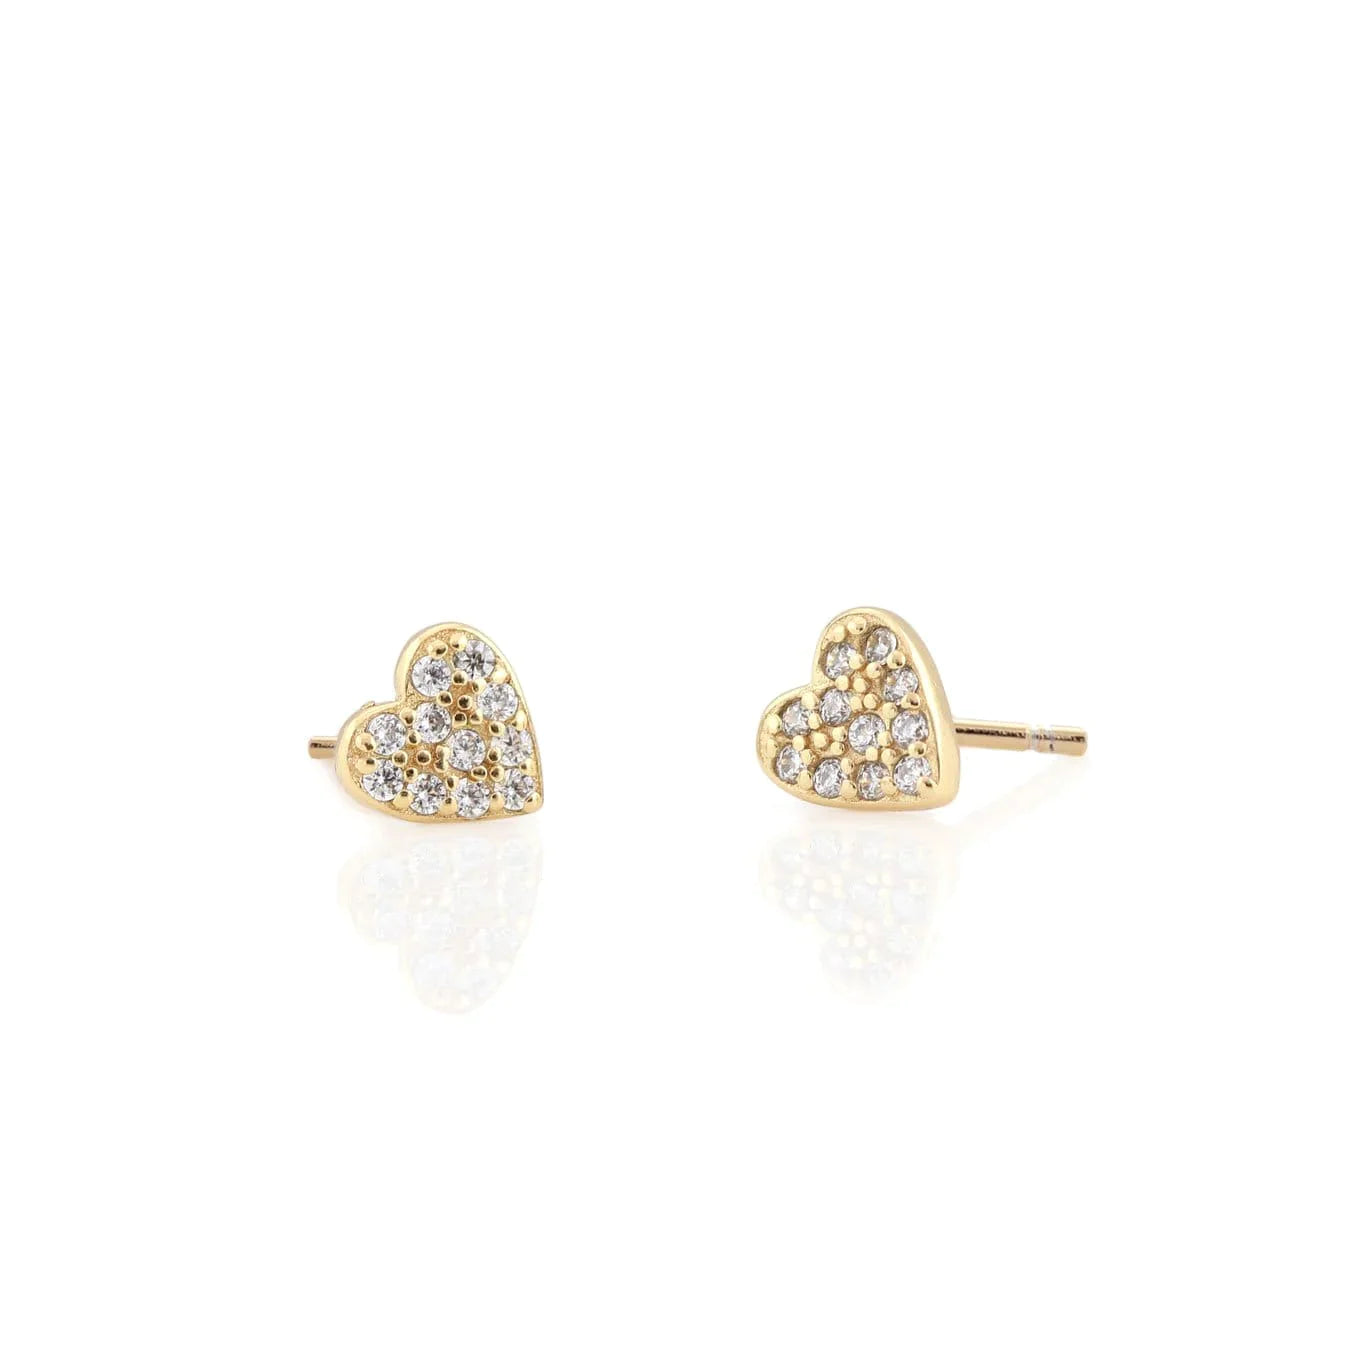 Kris Nations Heart Crystal Stud Earrings